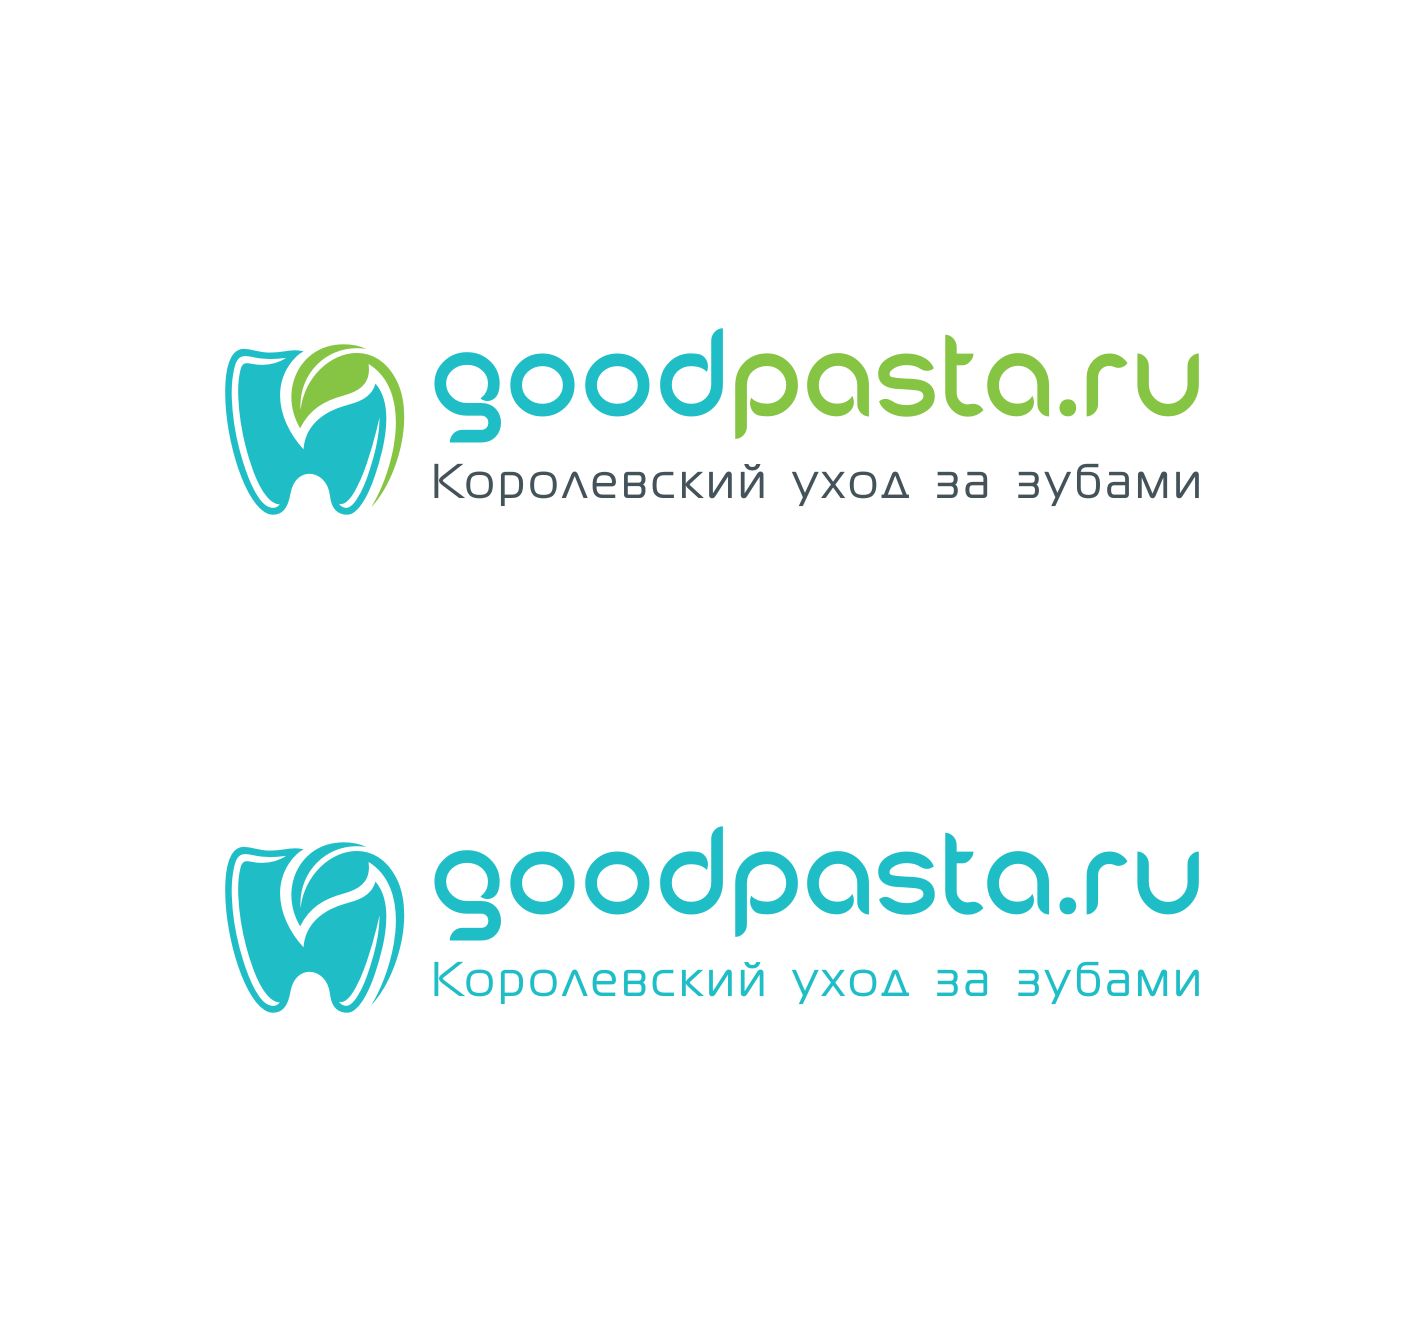 Логотип для интернет-магазина goodpasta.ru - дизайнер dima111